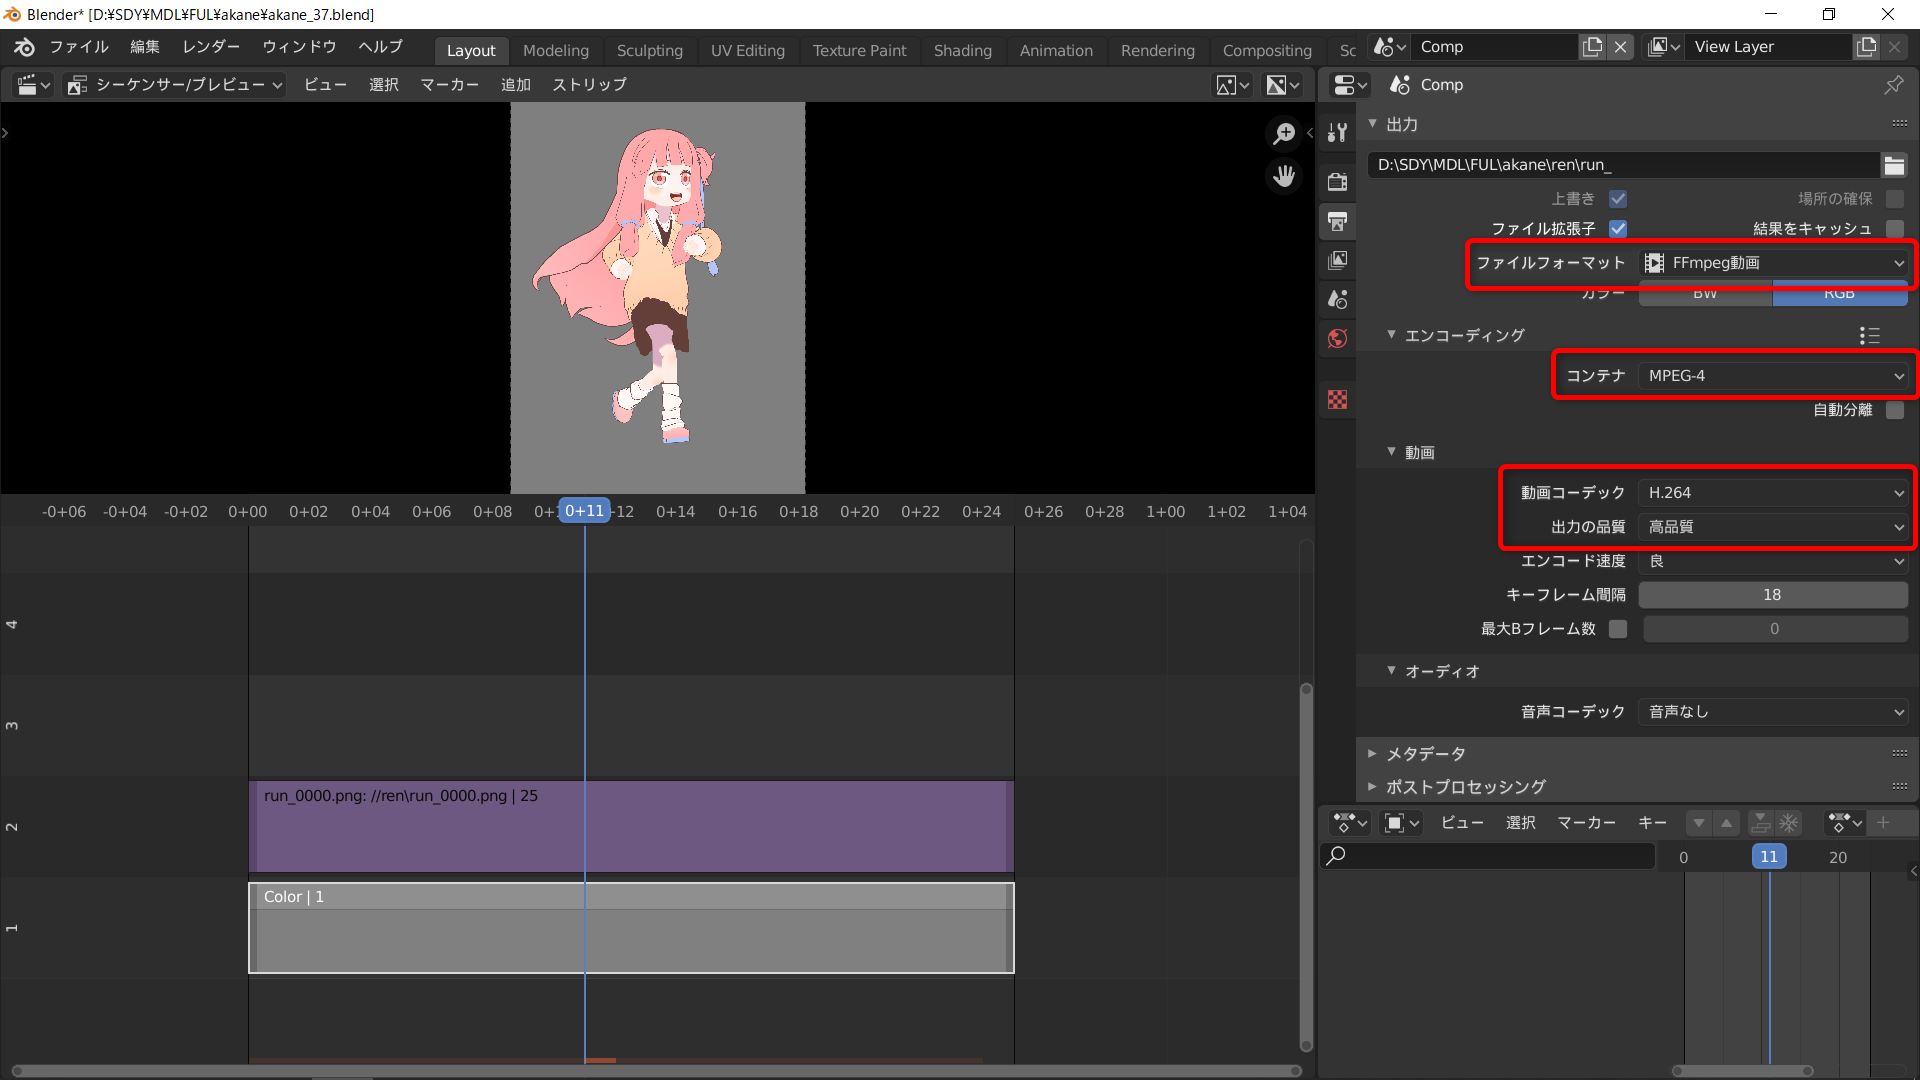 アニメーションを連番ファイル 動画ファイルに書き出す Blender 忘却まとめ